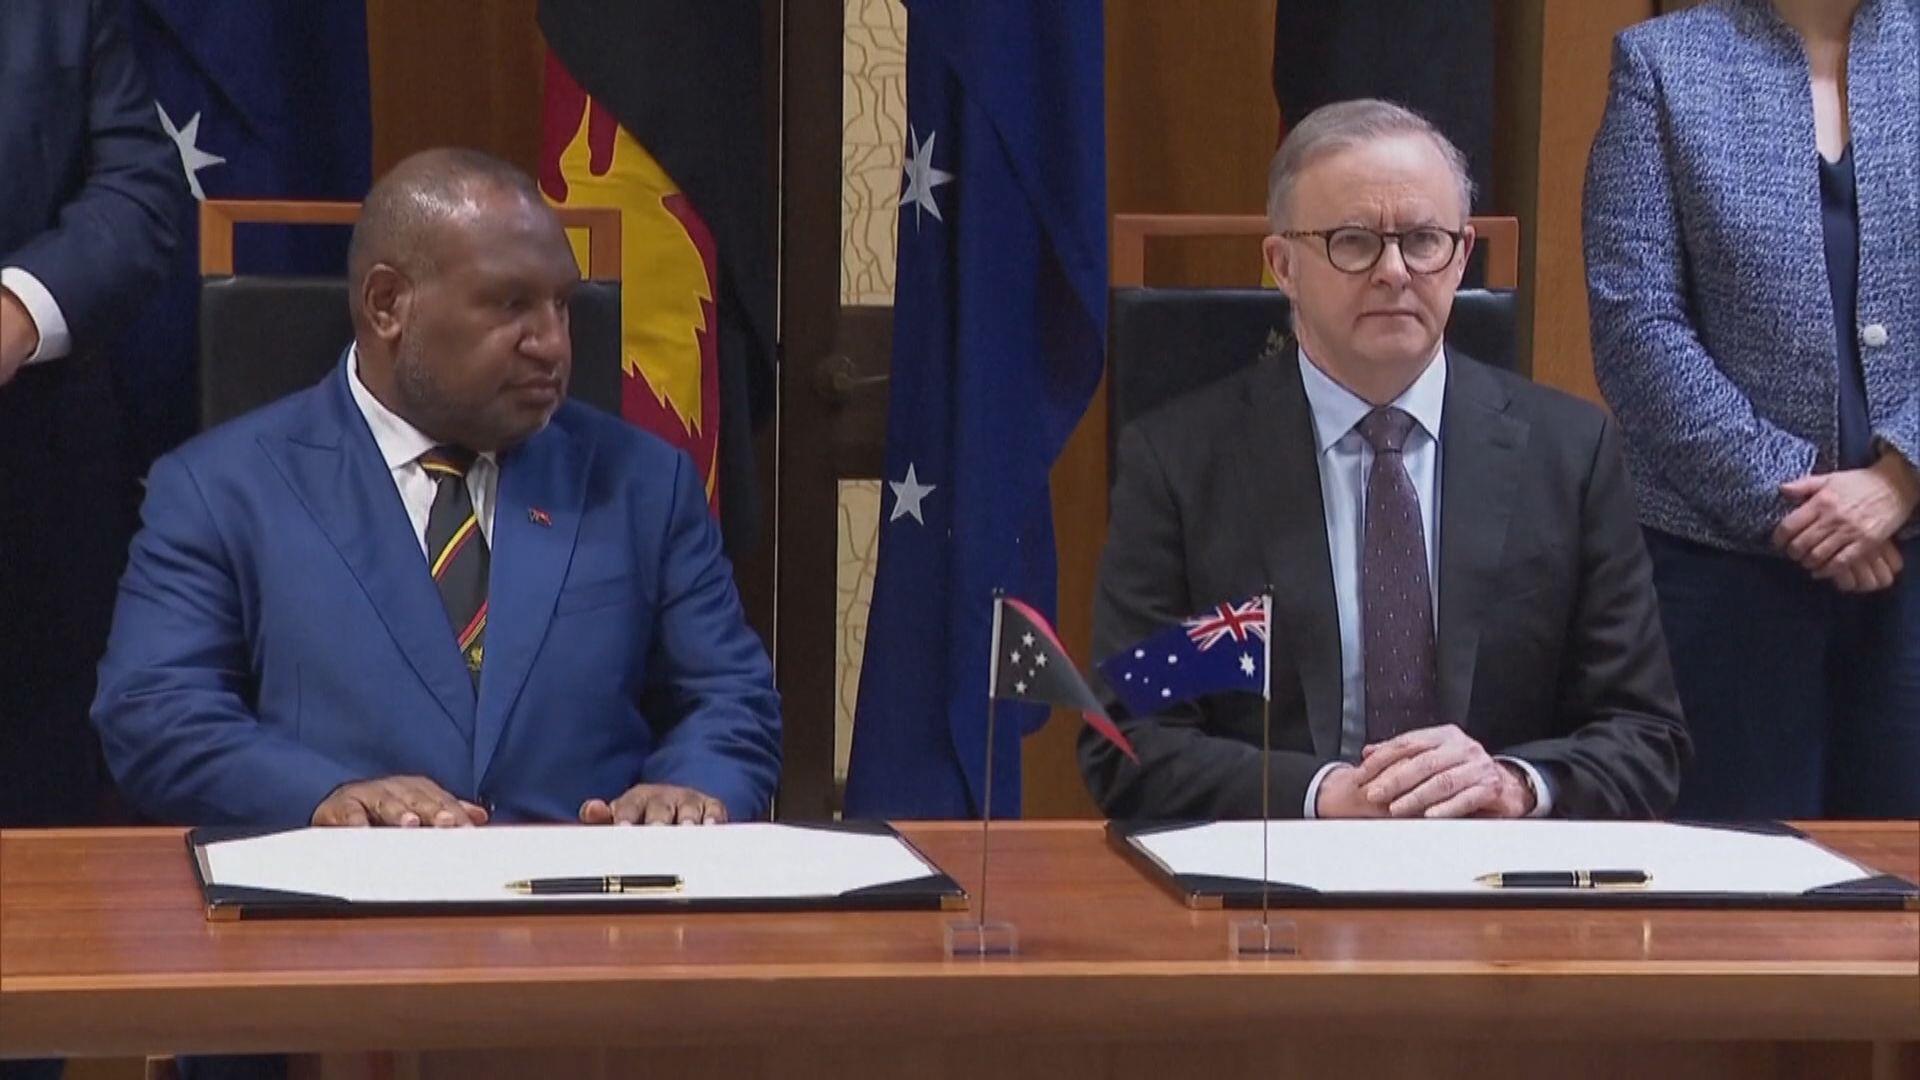 澳洲與巴布亞新幾內亞簽署安全協議 中方稱樂見各國與太平洋島國開展合作